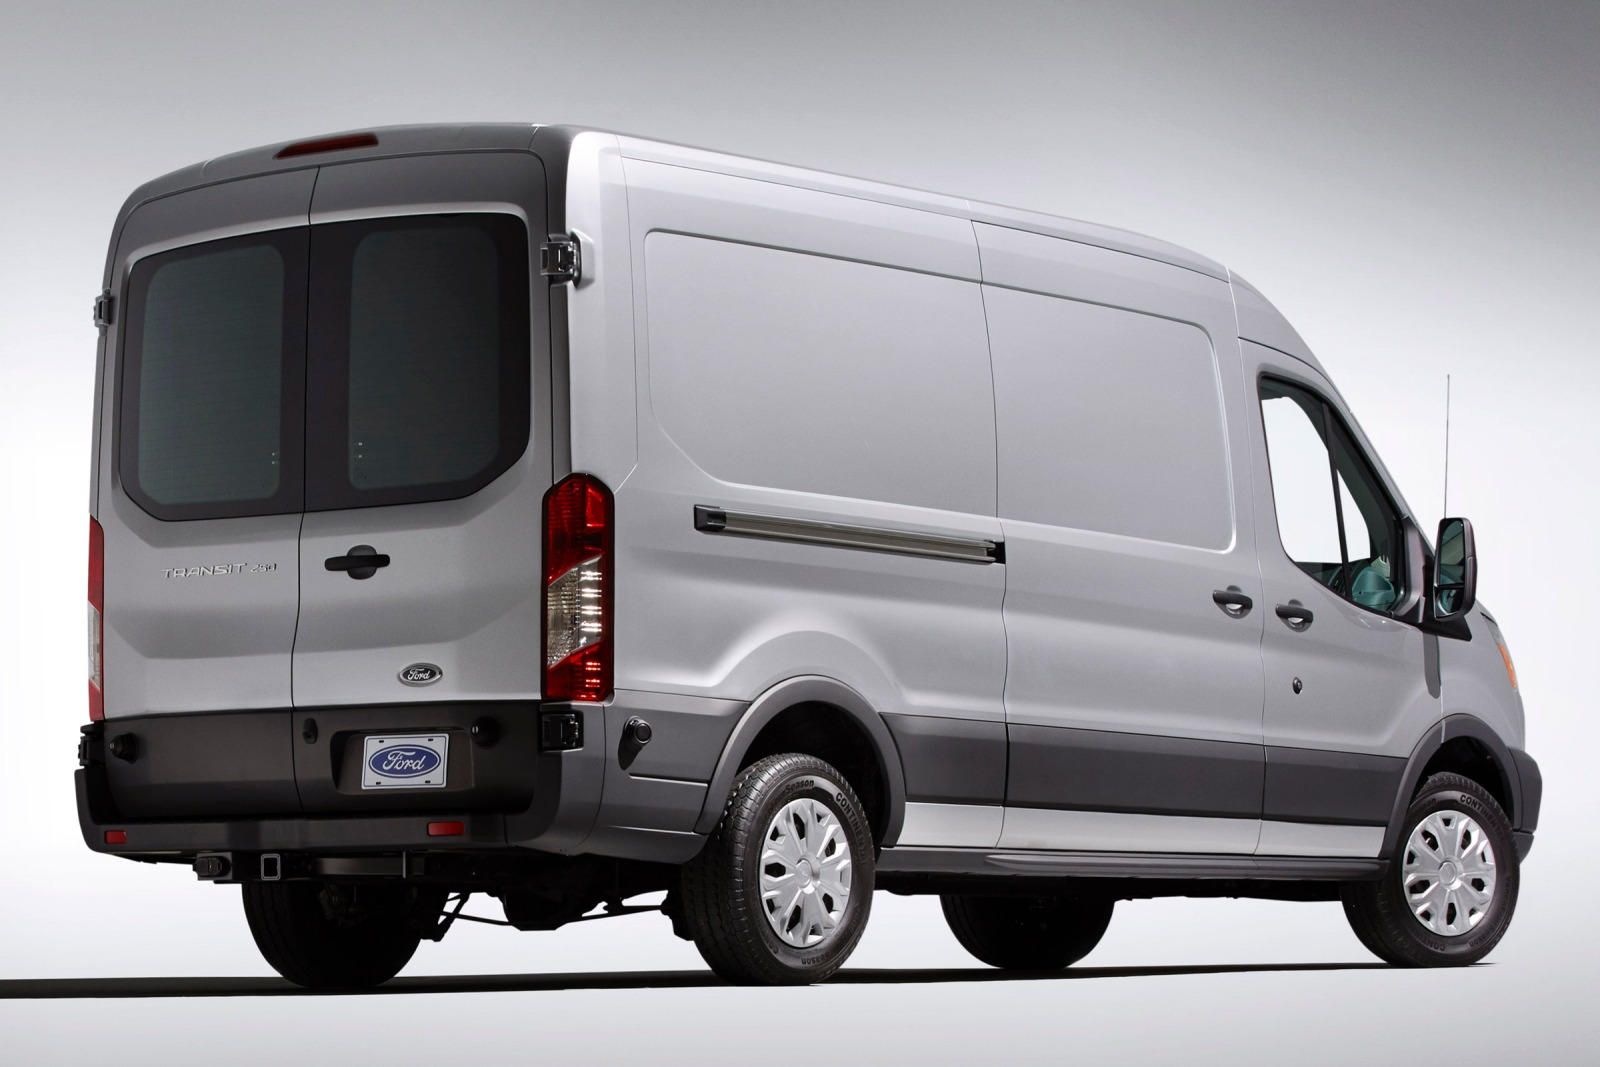 2019 Ford Transit Cargo Van Review, Pricing | Transit Cargo Van Models